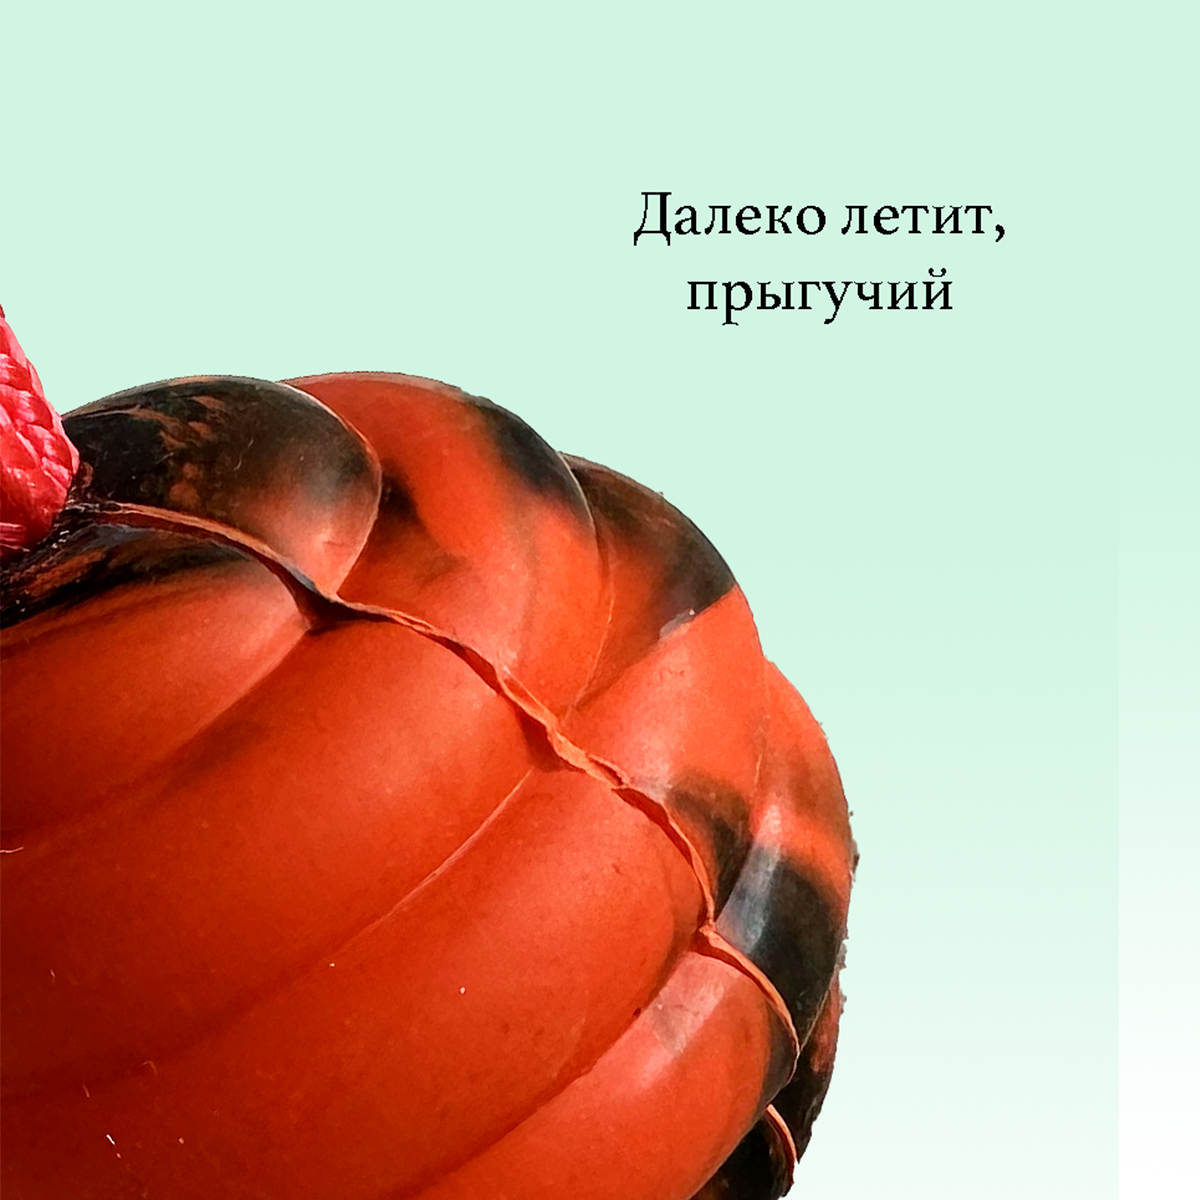 Мяч для собак BITEFORCE, оранжевый, литой, из натуральной резины, диаметр 6 см